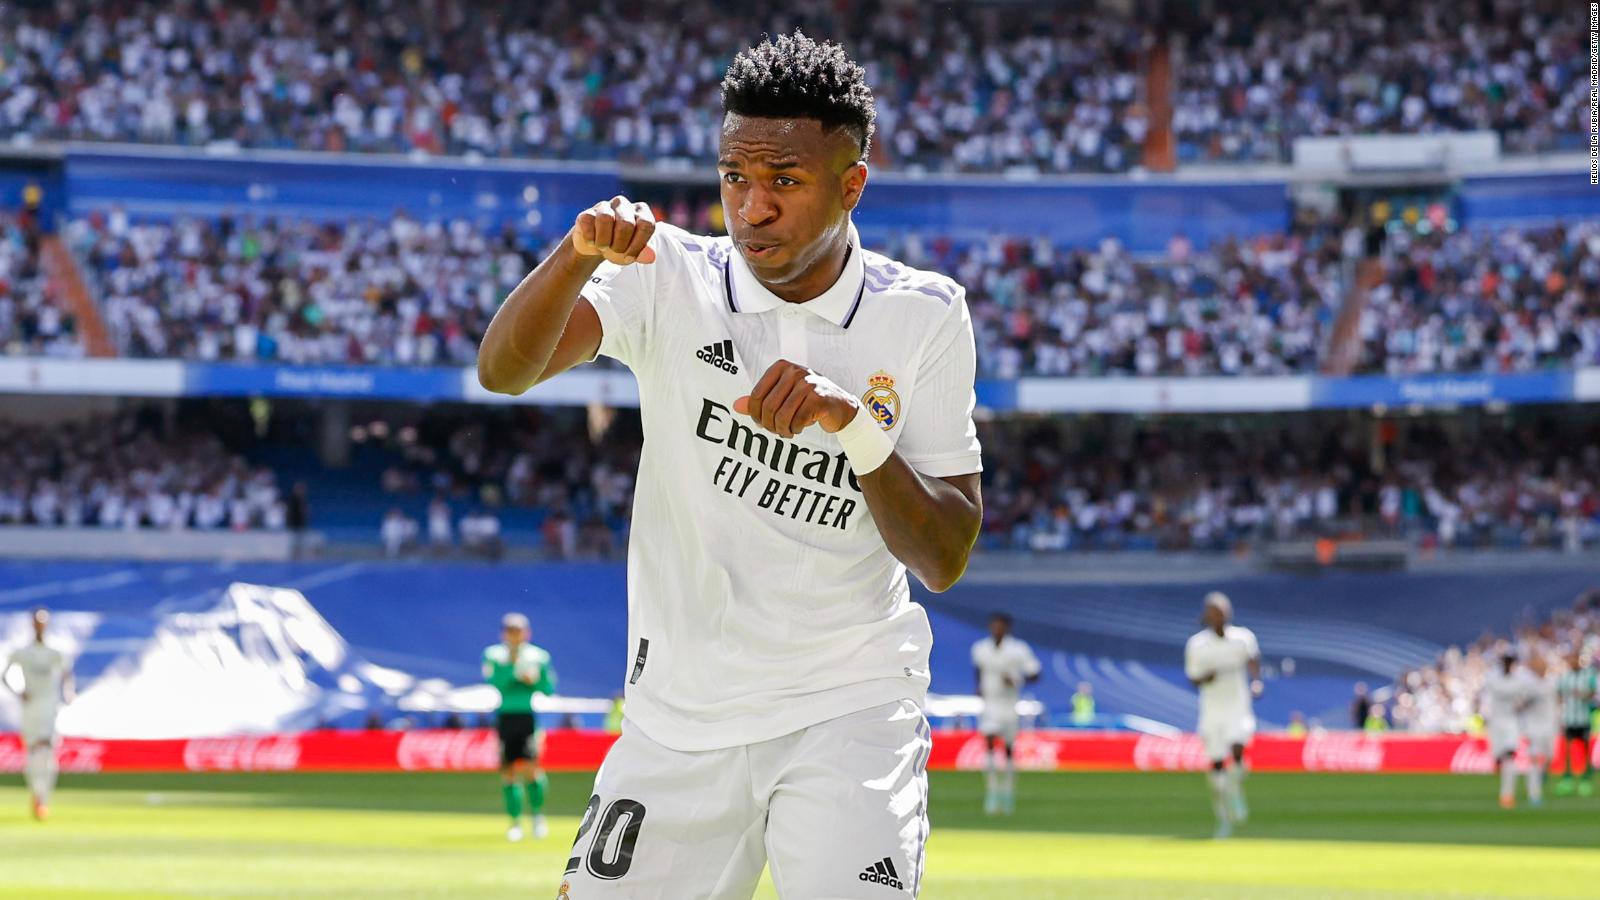 Vinícius Jr., del Real Madrid, condena las críticas "racistas" por baile en gol